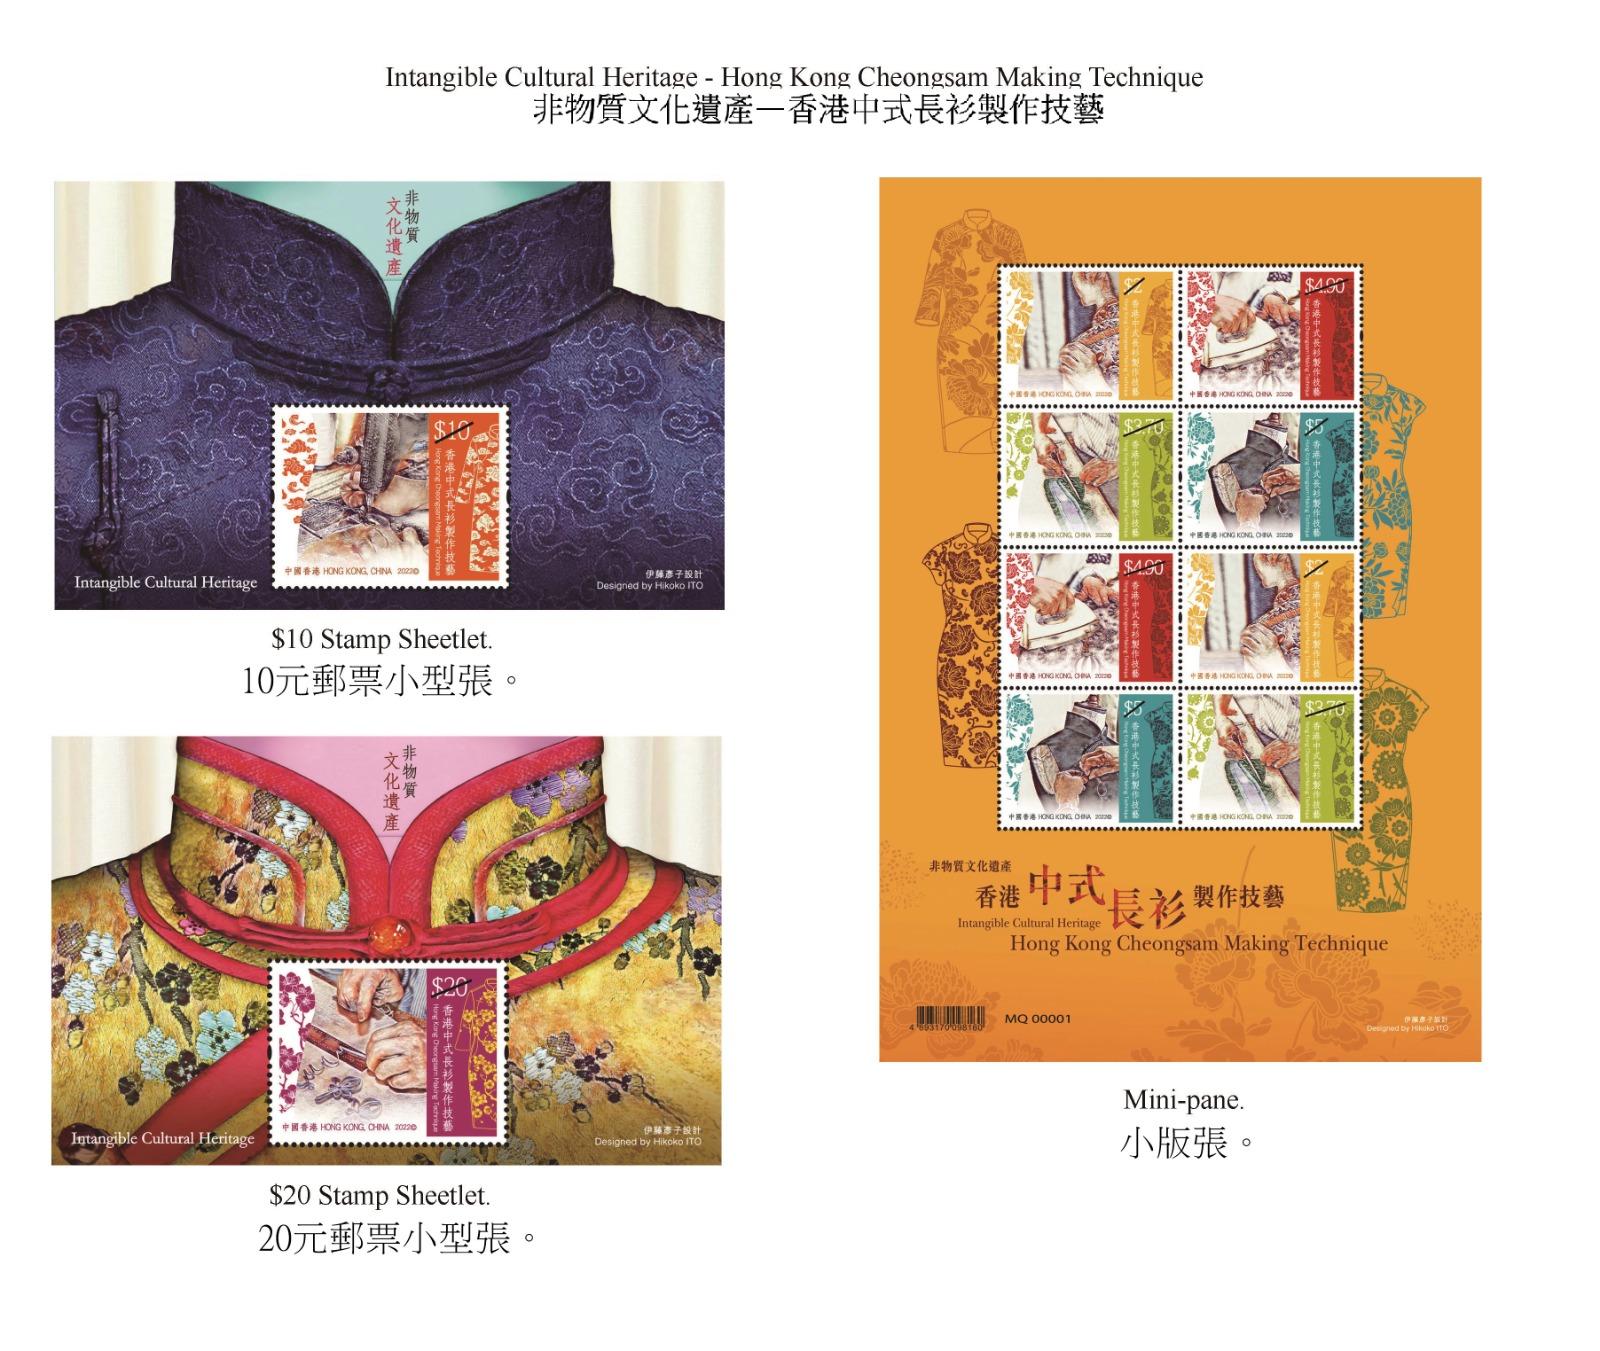 香港邮政九月二十二日（星期四）发行以「非物质文化遗产──香港中式长衫制作技艺」为题的特别邮票及相关集邮品。图示邮票小型张和小版张。